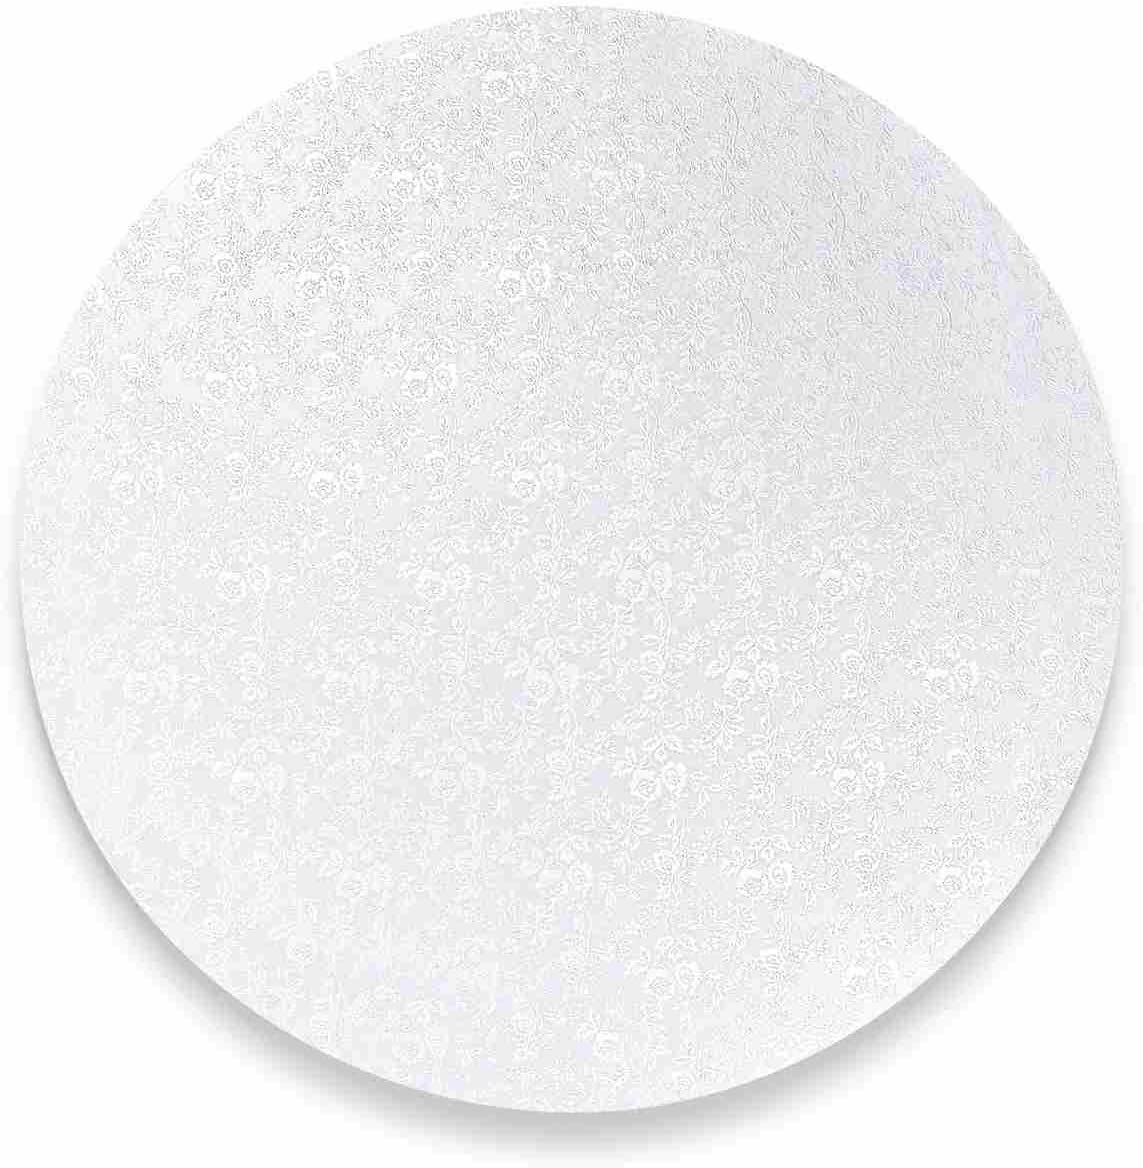 Staedter Staedtler Städter Baking Accessories Cake Plate Diameter 35 cm White Round